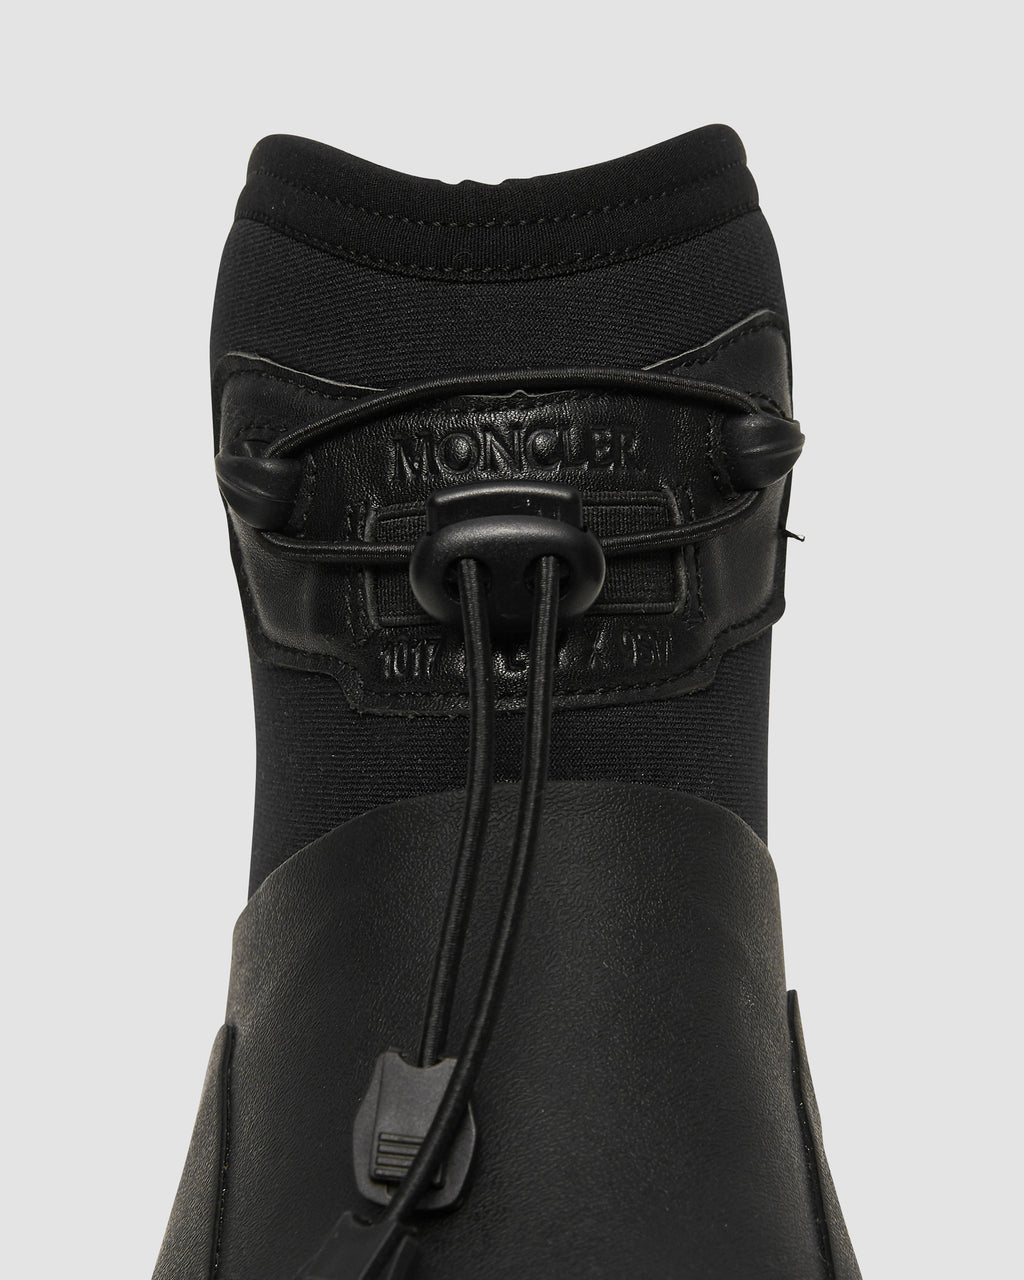 moncler black boots